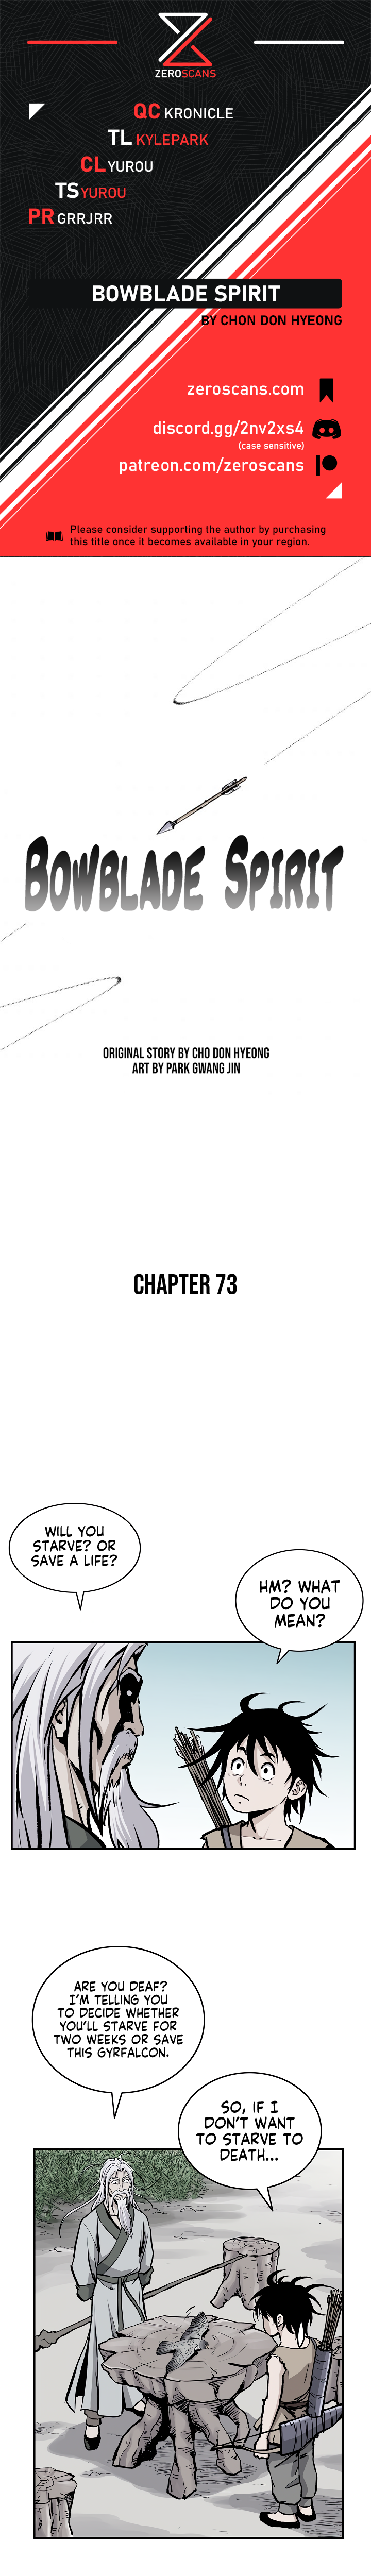 Bowblade Spirit - Chapter 6988 - Image 1